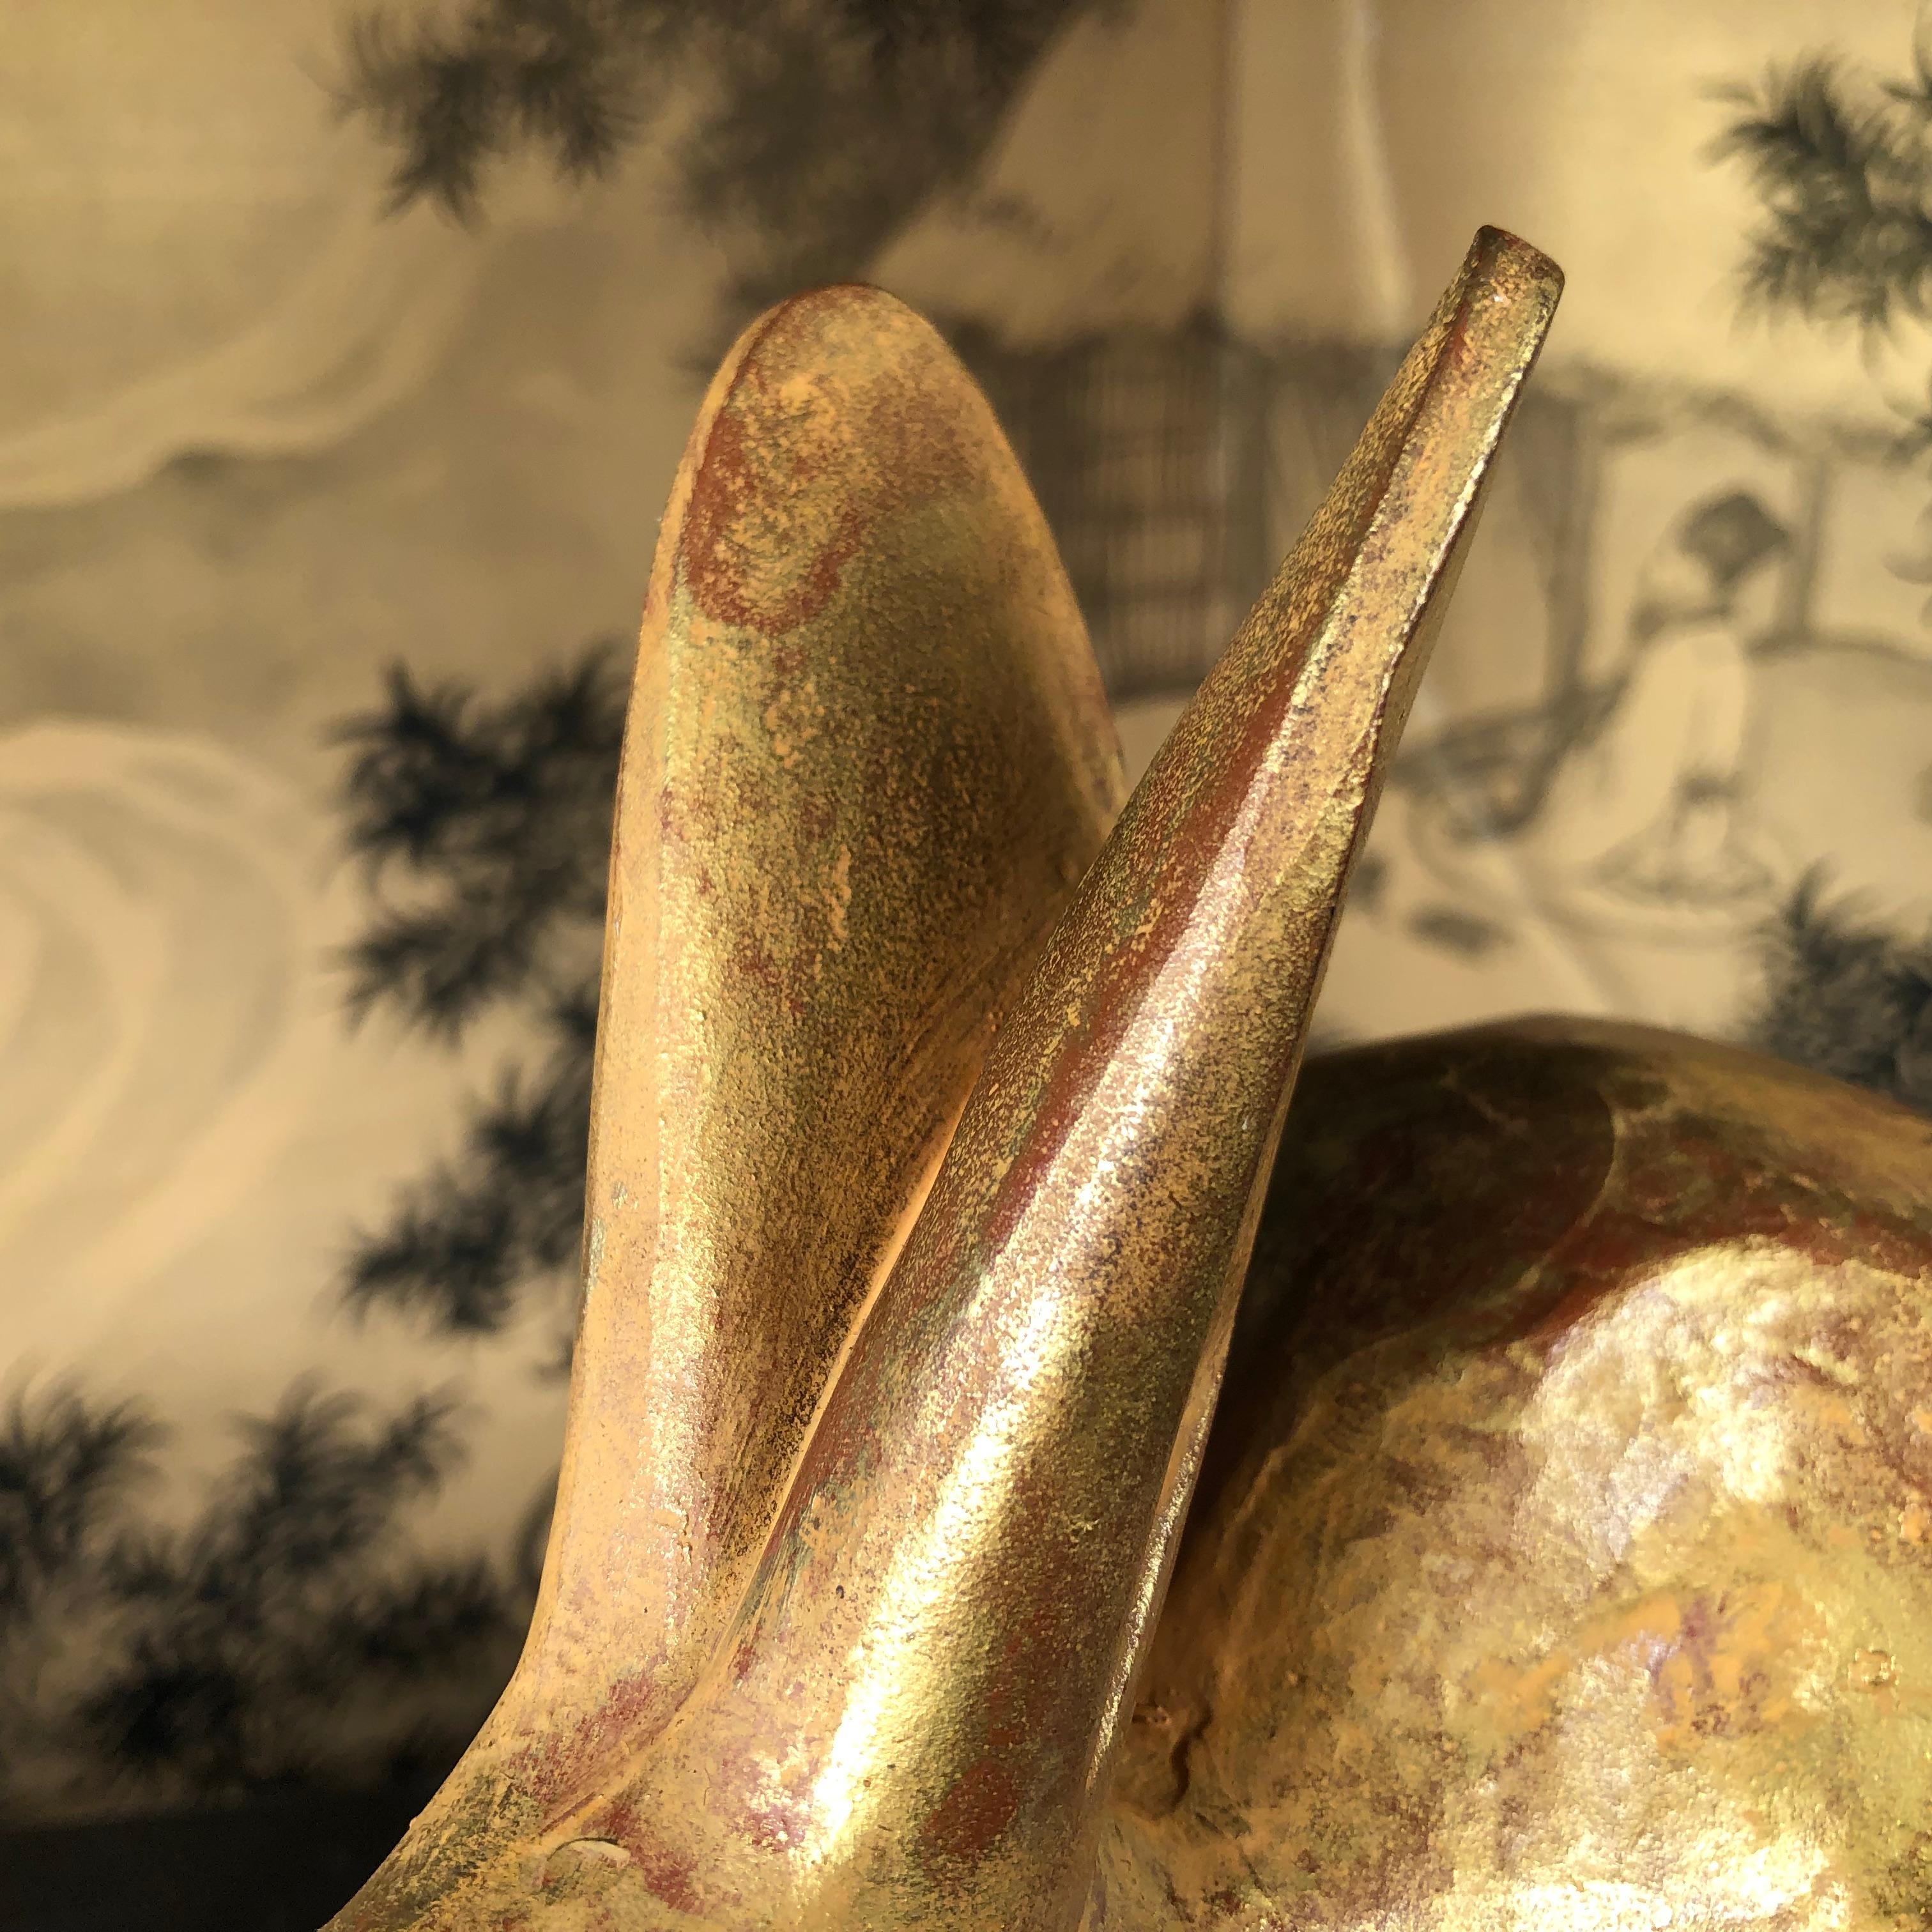 Bronze Japanese Golden Rabbit Sculpture by Famous Artist Sotaro